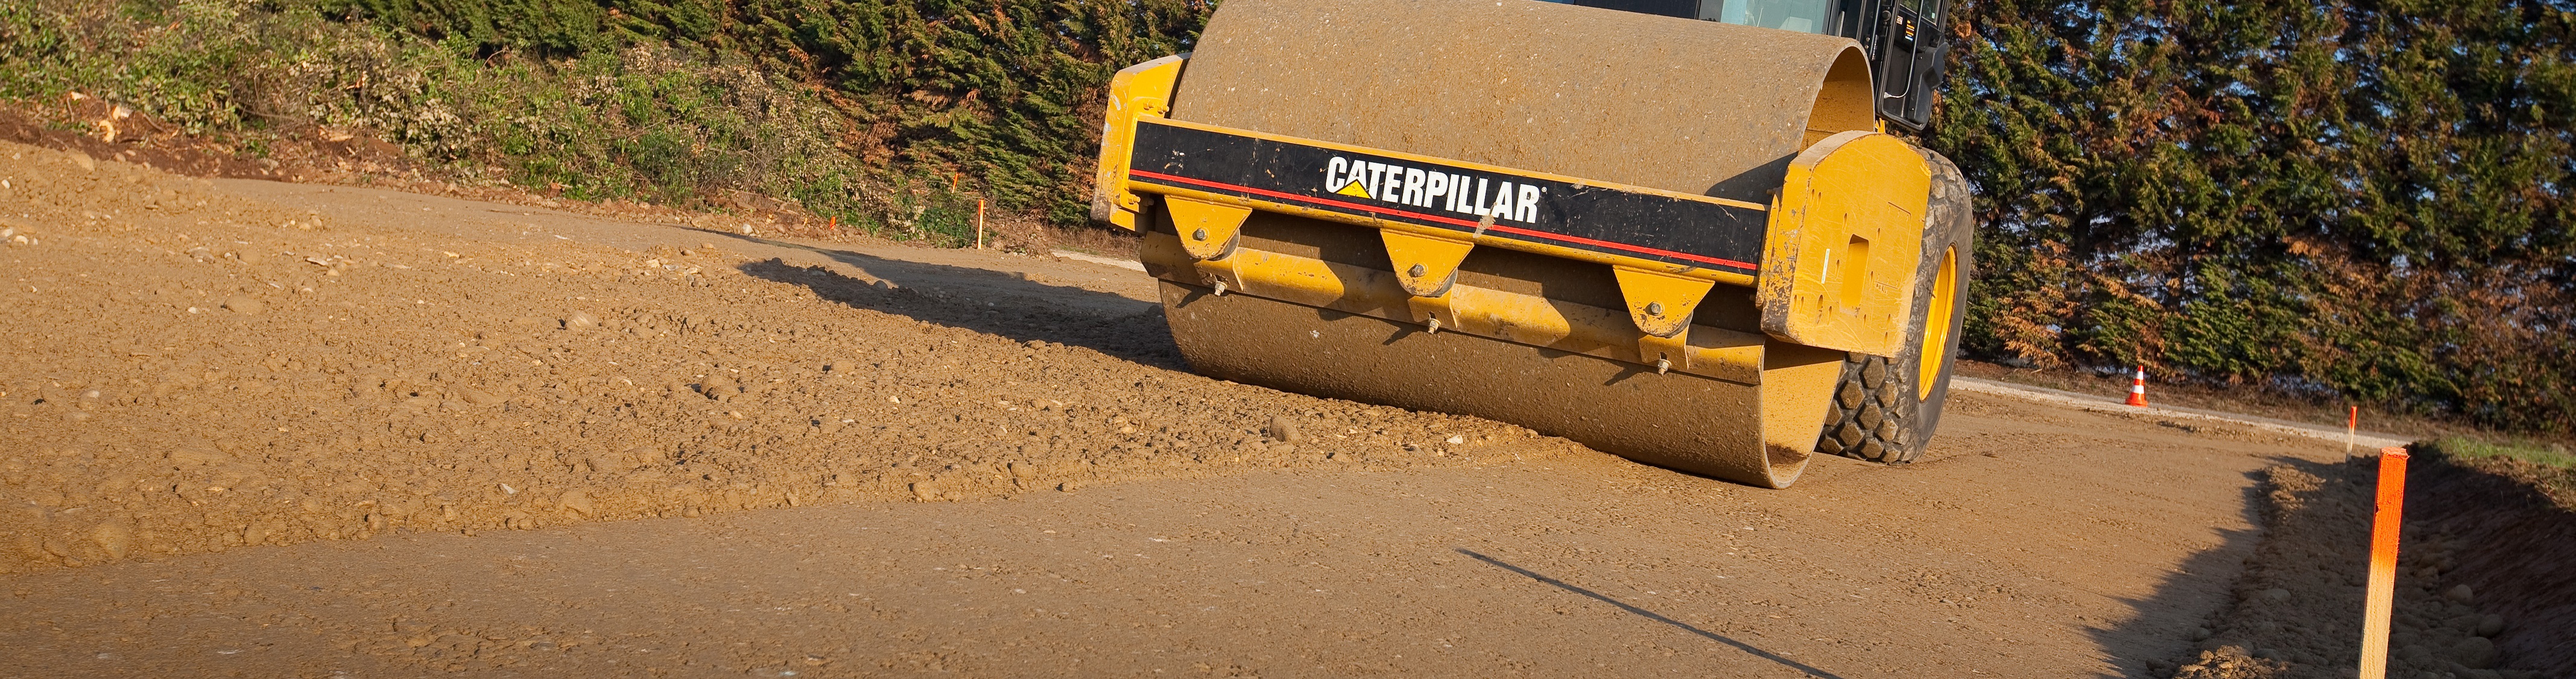 Compacteur de terrassement Caterpillar CS533, V3, utilisé pour le compactage des plates-forme batiments et voiries.